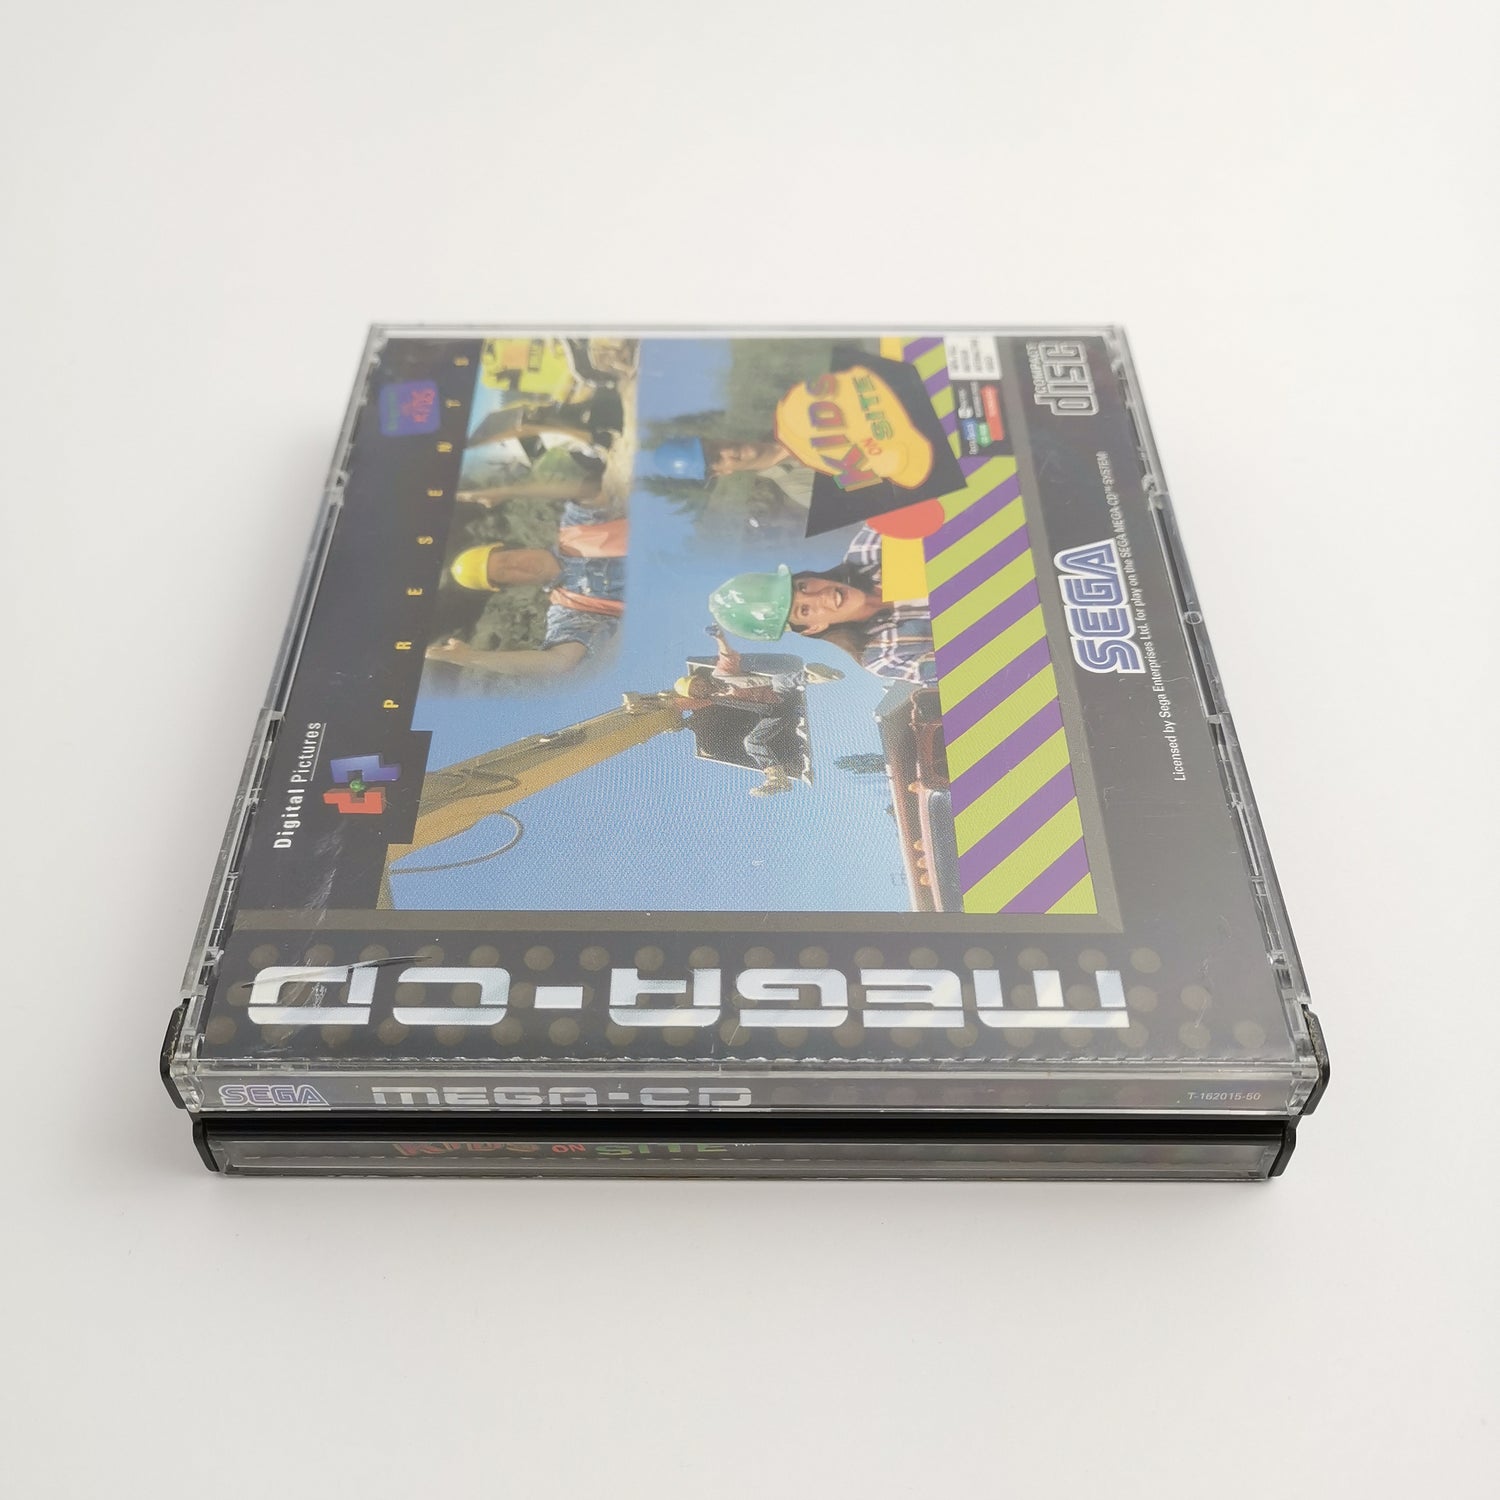 Sega Mega CD game 